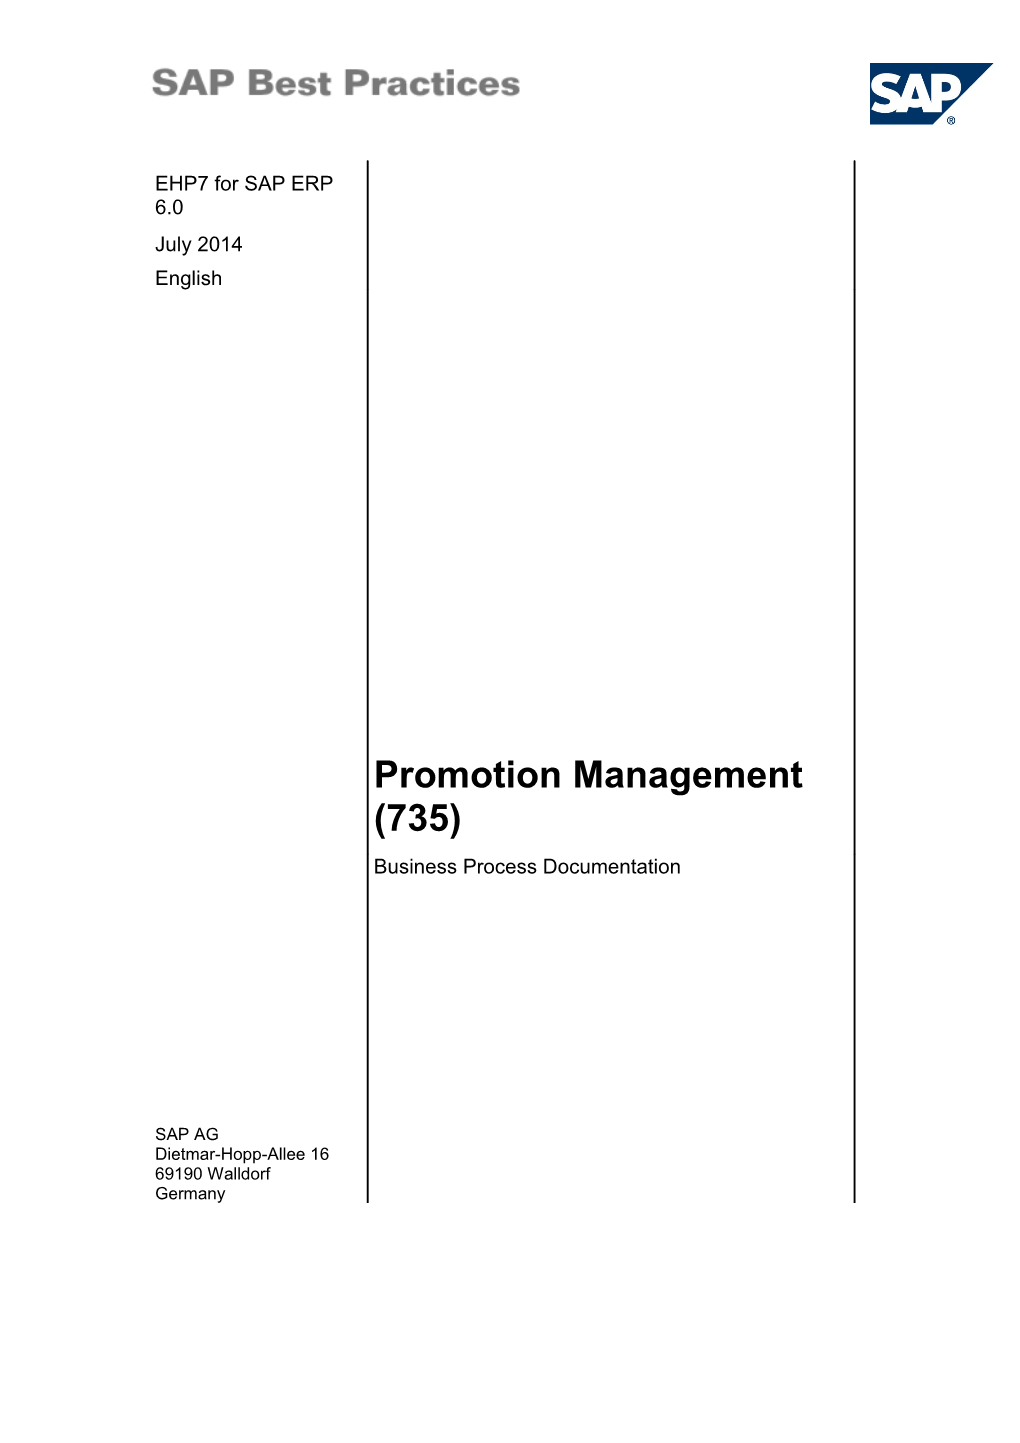 Business Process Procedures s2